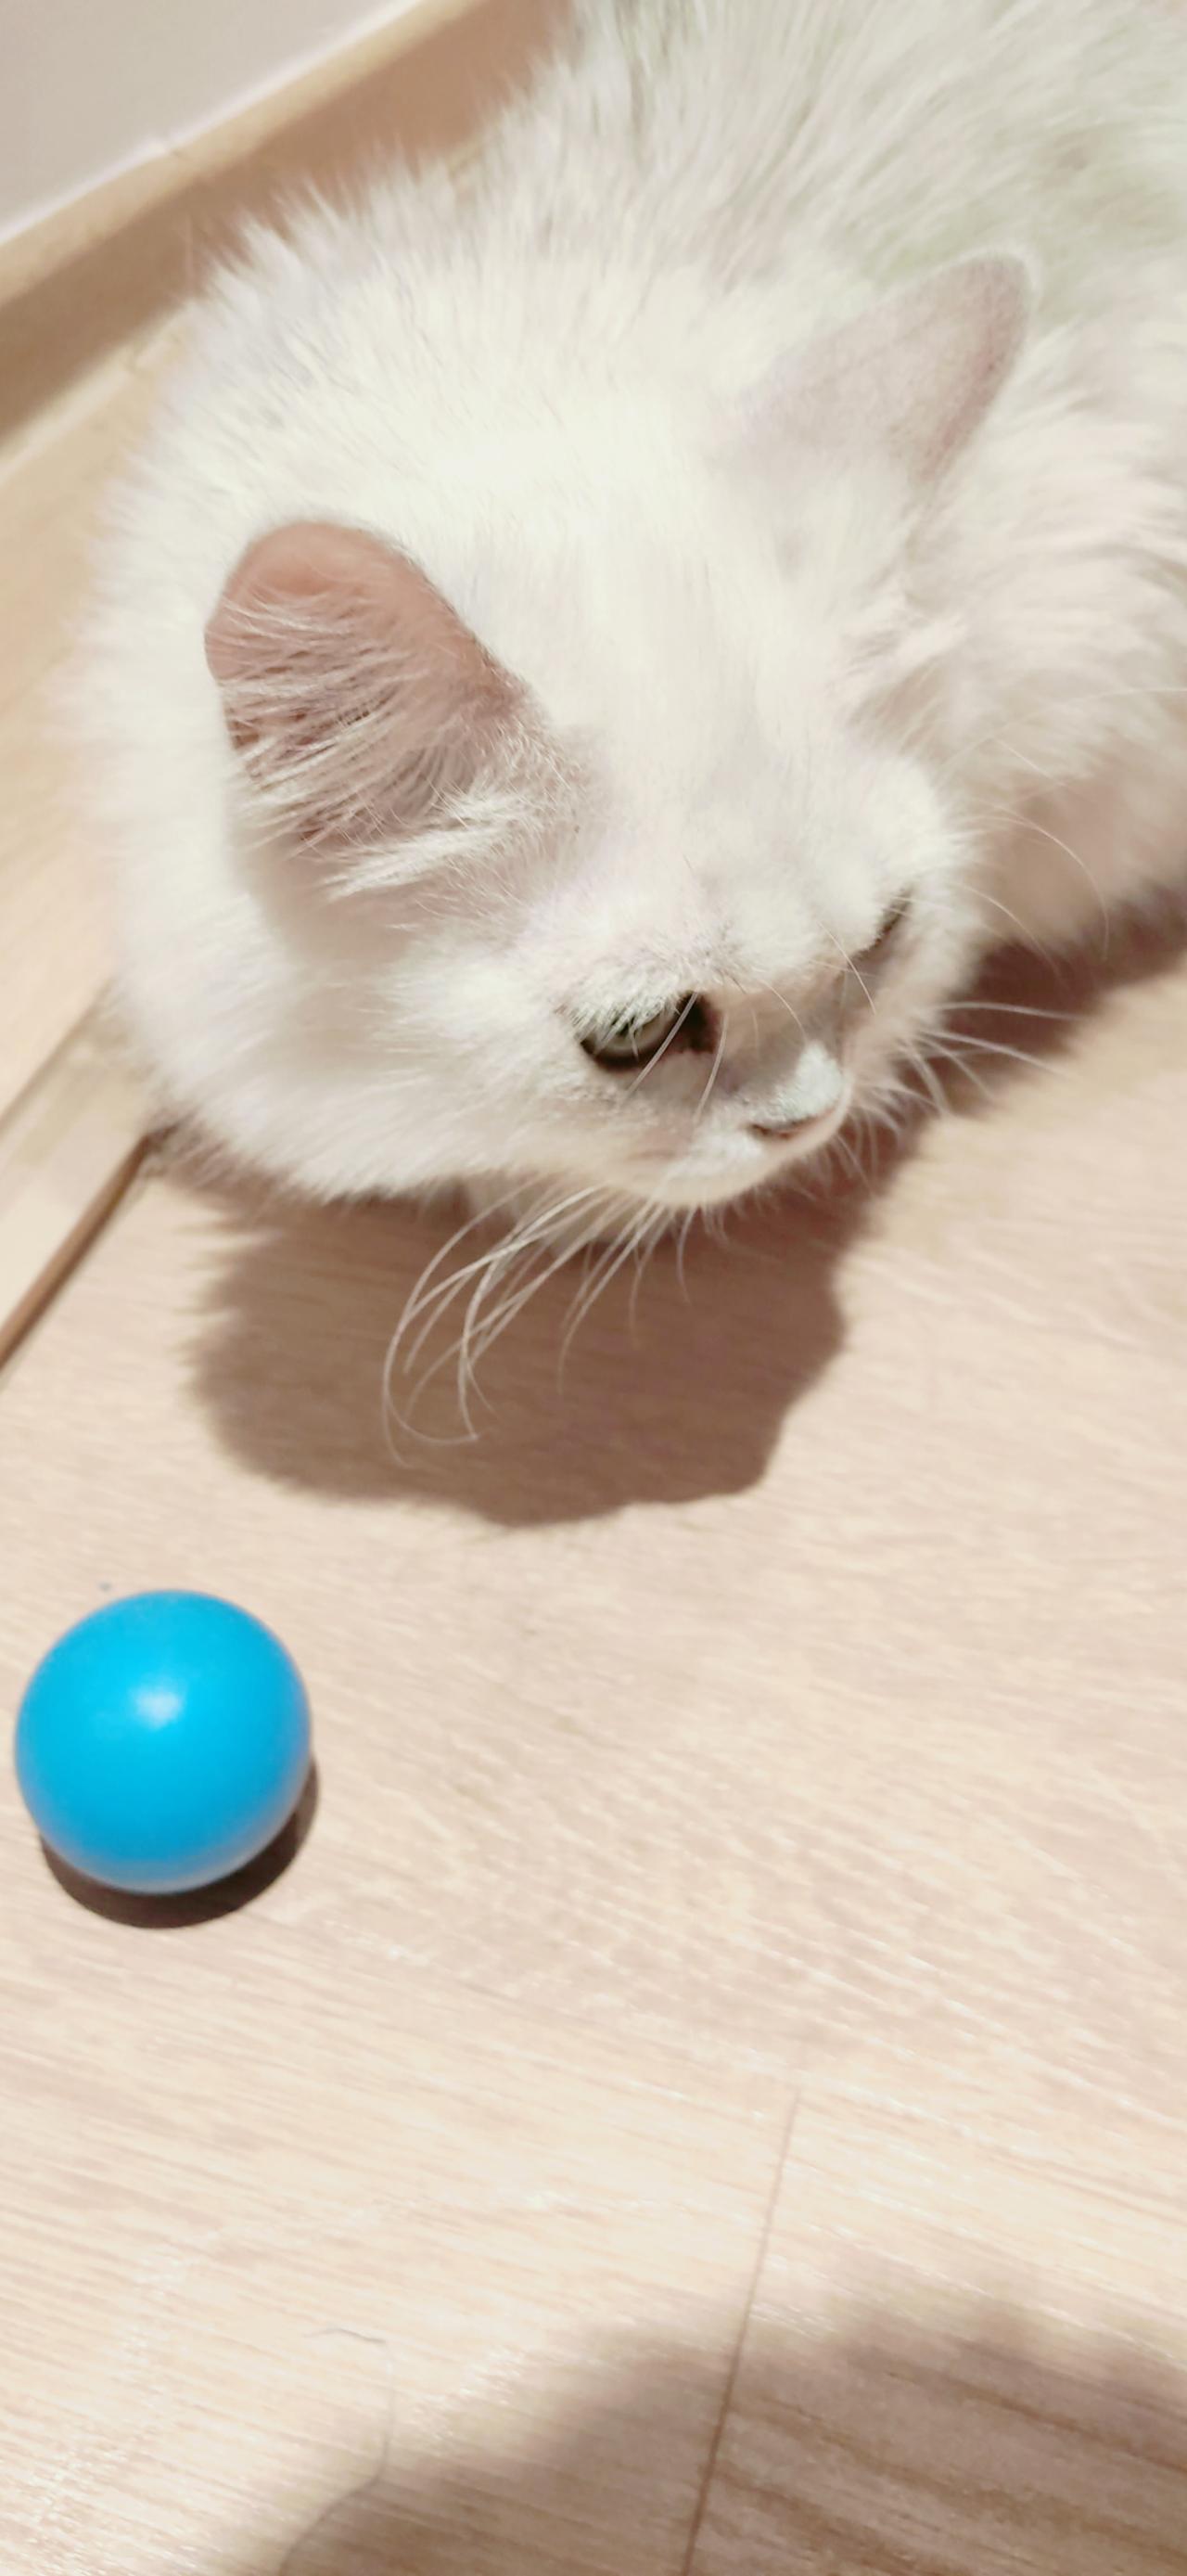 趴在木地板的白色猫咪和蓝色球 竖屏手机壁纸